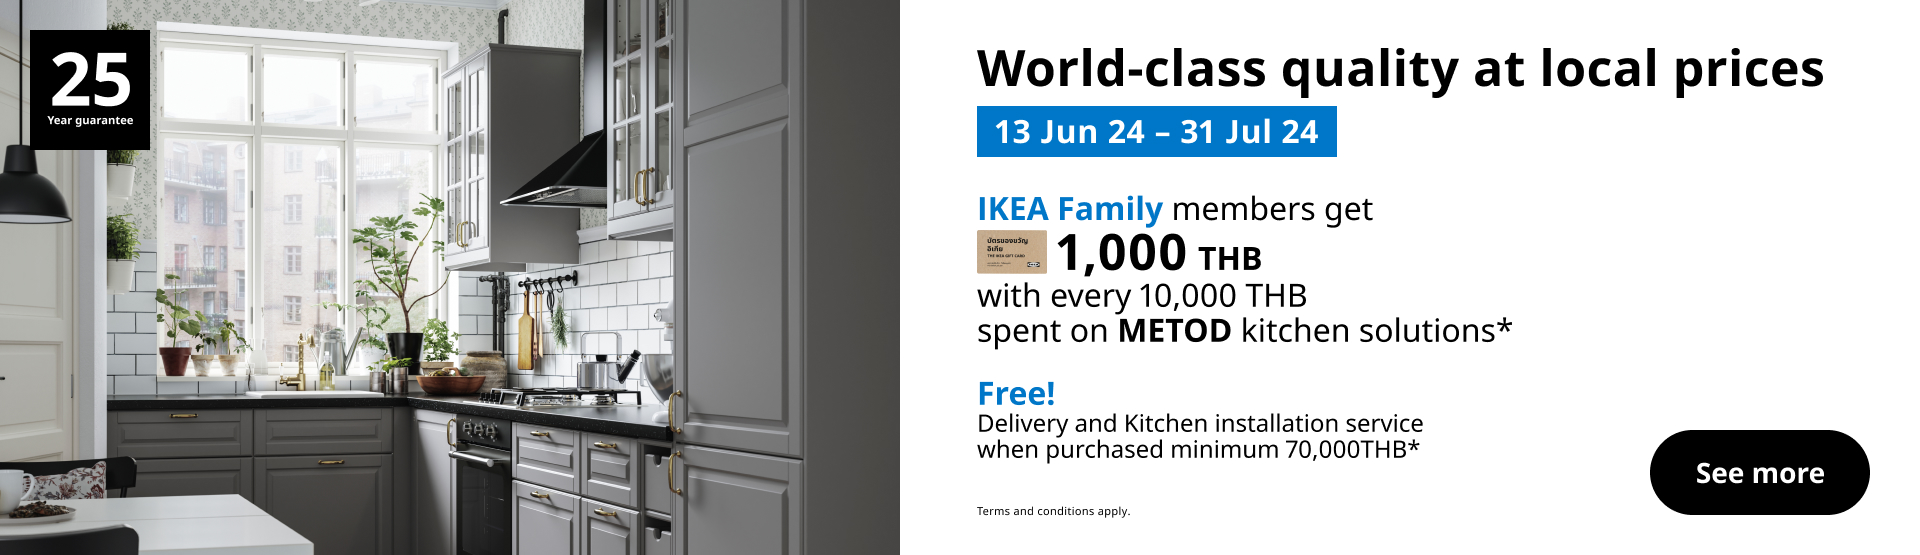 IKEA Family Thailand - IKEA Family Kitchen Promo